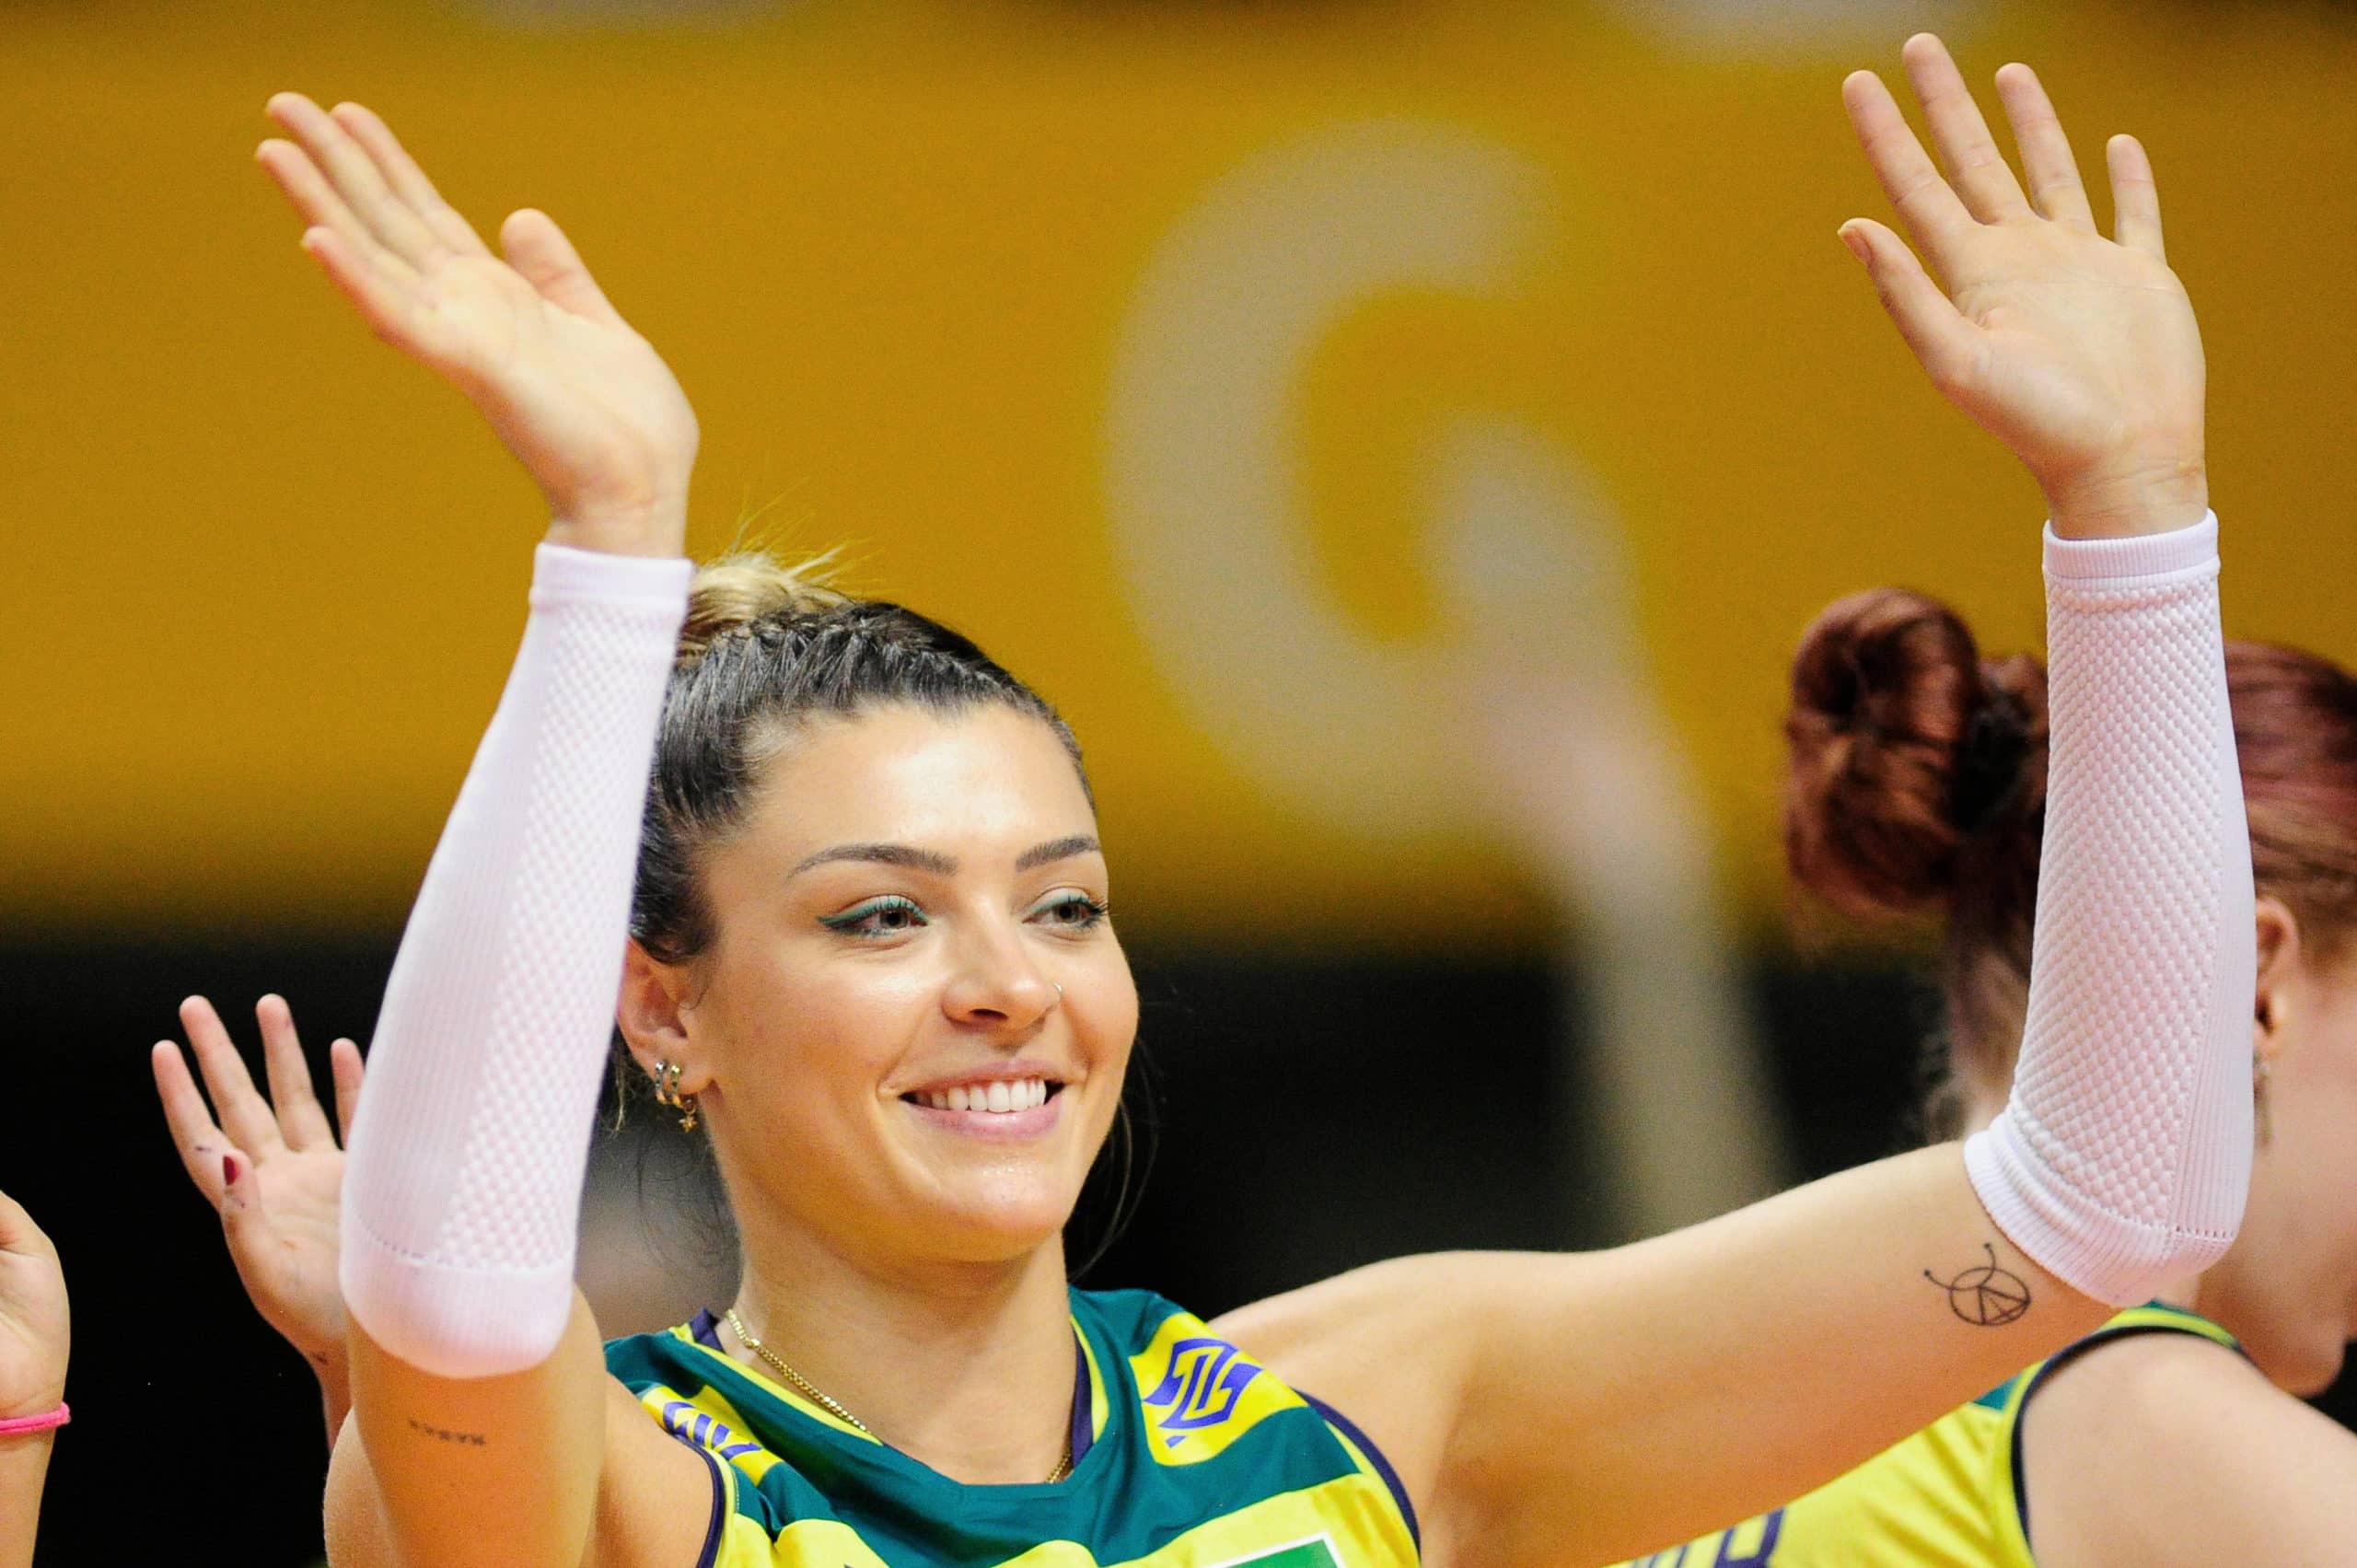 Brasil vence Porto Rico por 3 sets a 0 e segue invicto no Pré-Olímpico de vôlei feminino